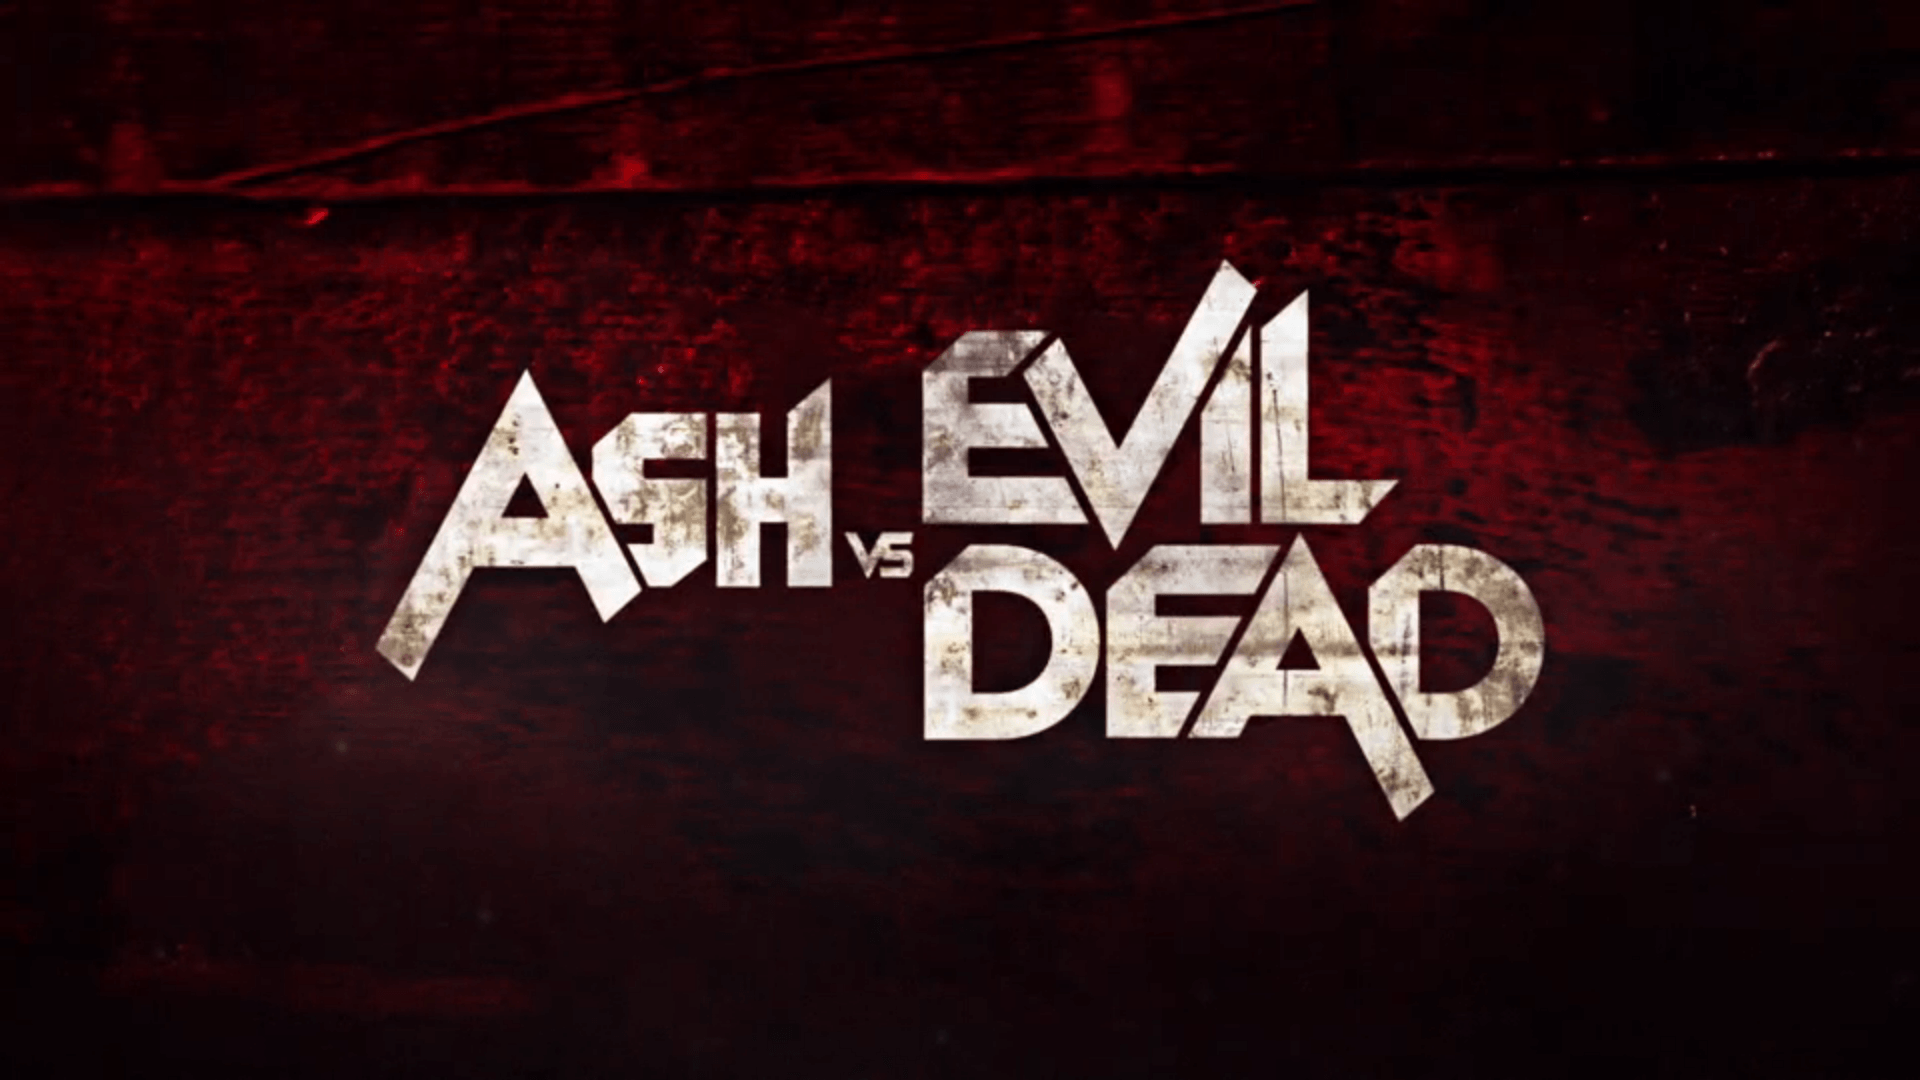 Ash vs Evil Dead Wallpaper. Just Good Vibe